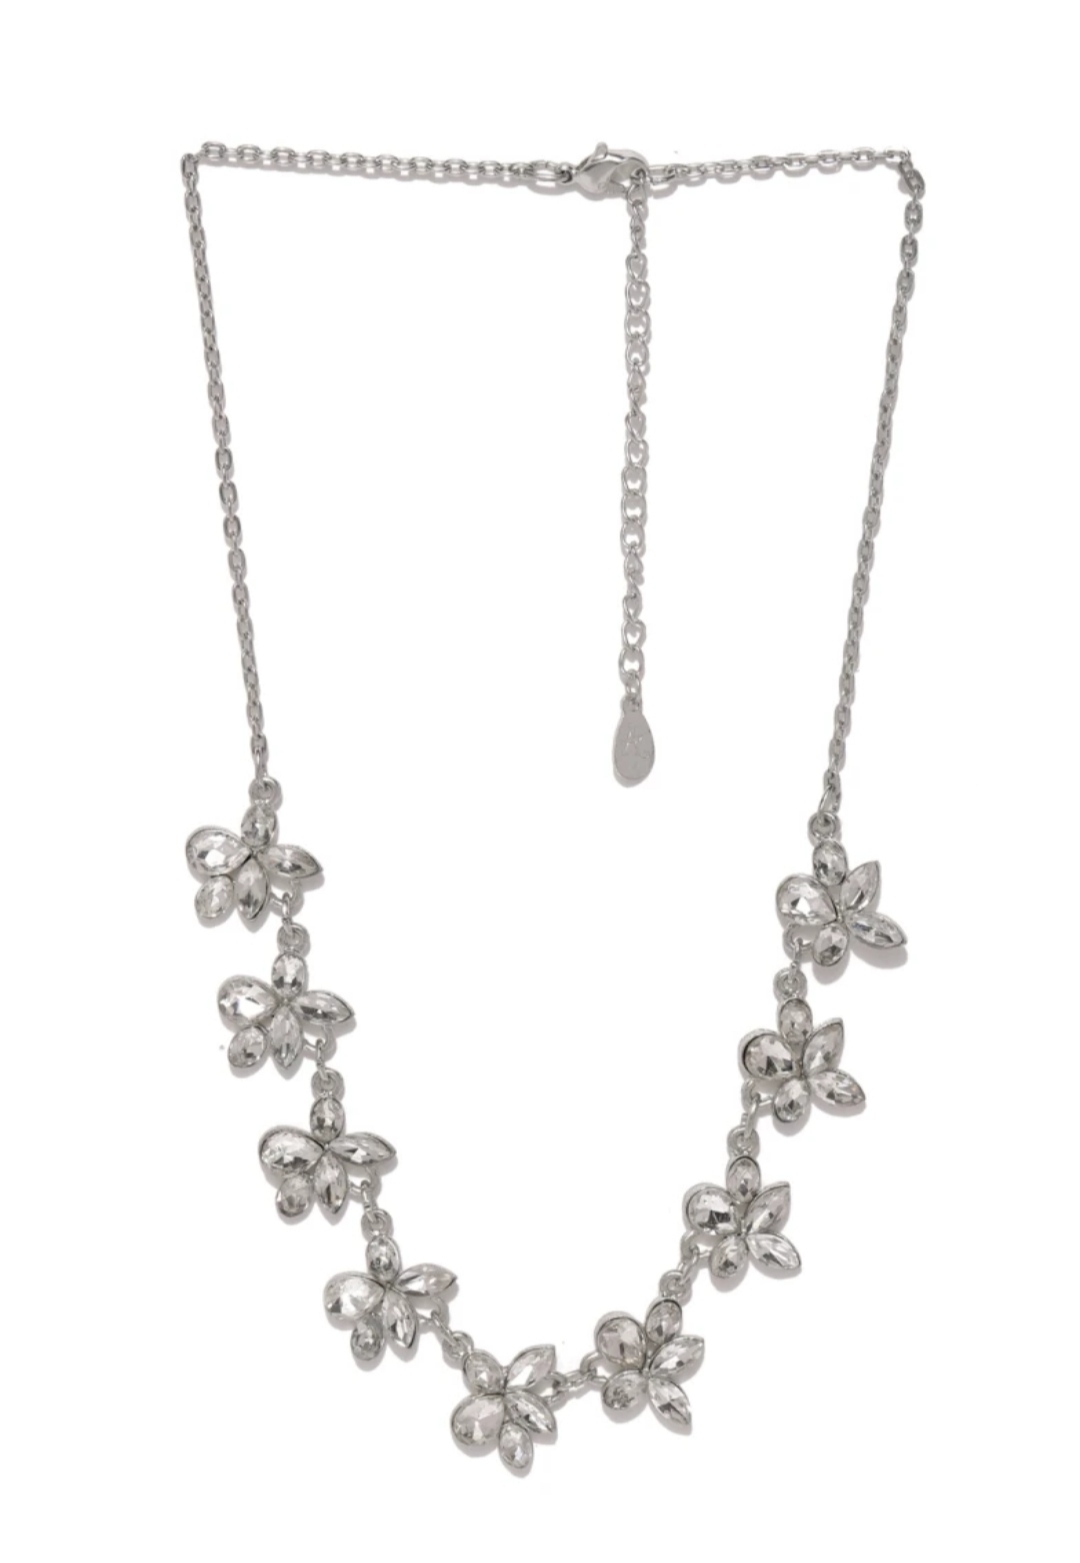 Vintage crystal statement necklace